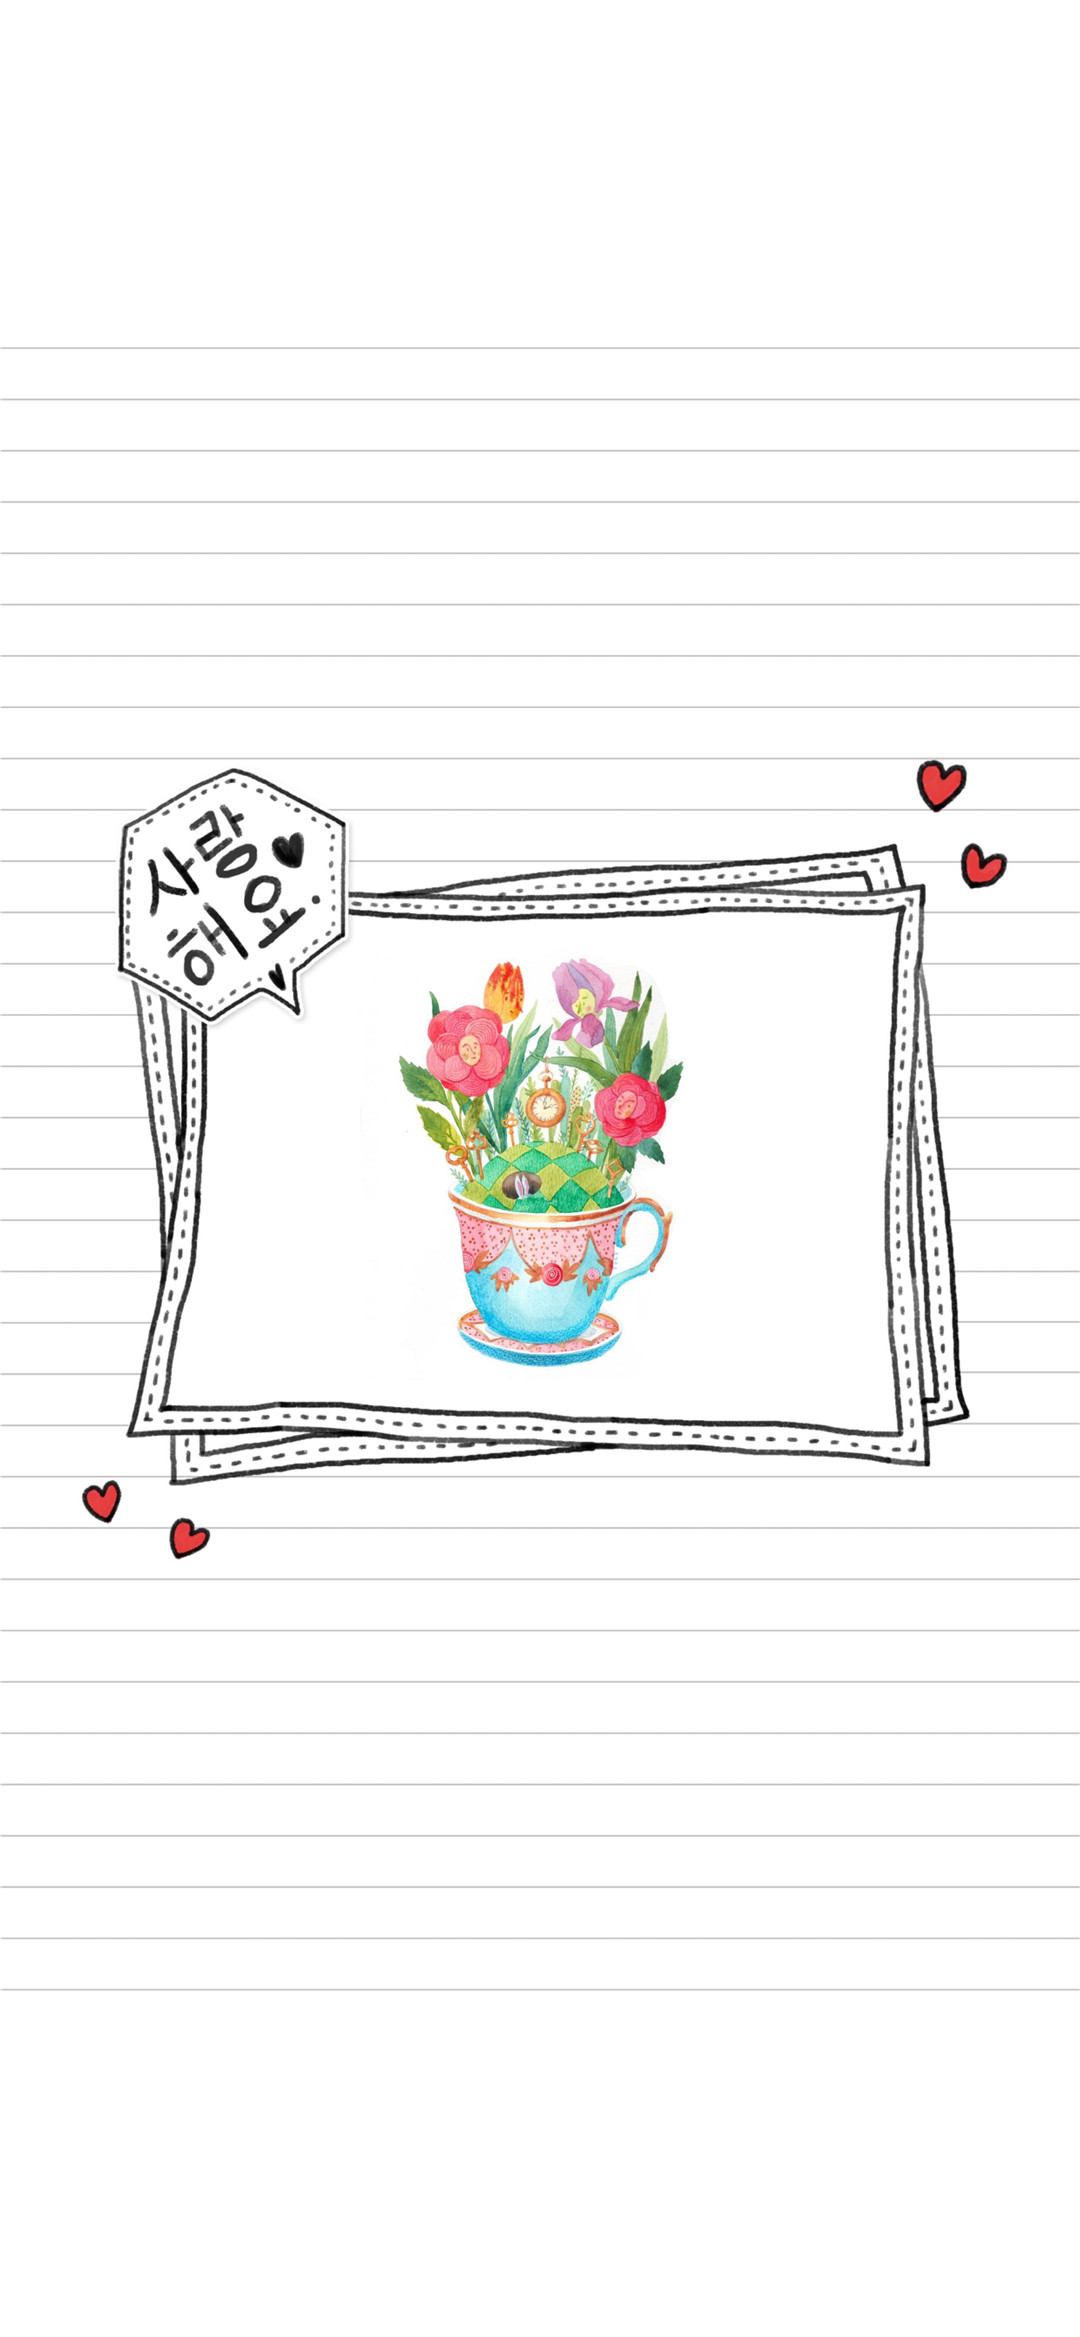 apk小游戏韩系创意卡通插画高清手机壁纸安卓手机壁纸高清截图7